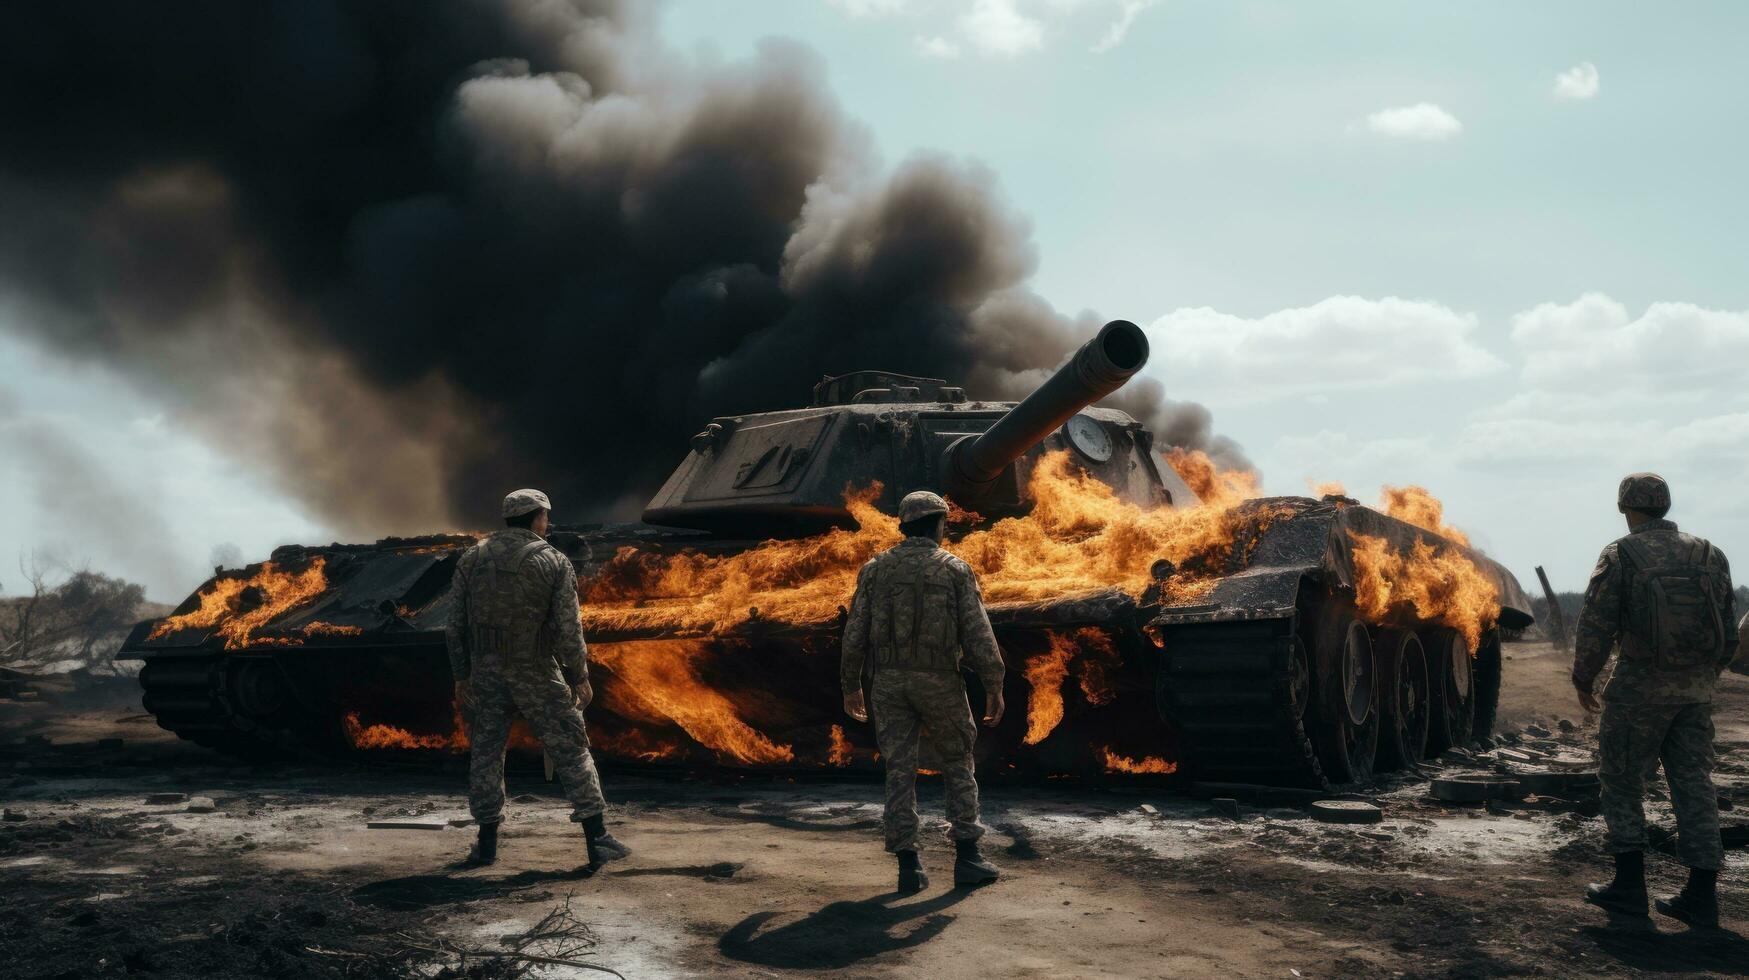 militaire blanc Hommes sur une brûlé réservoir photo